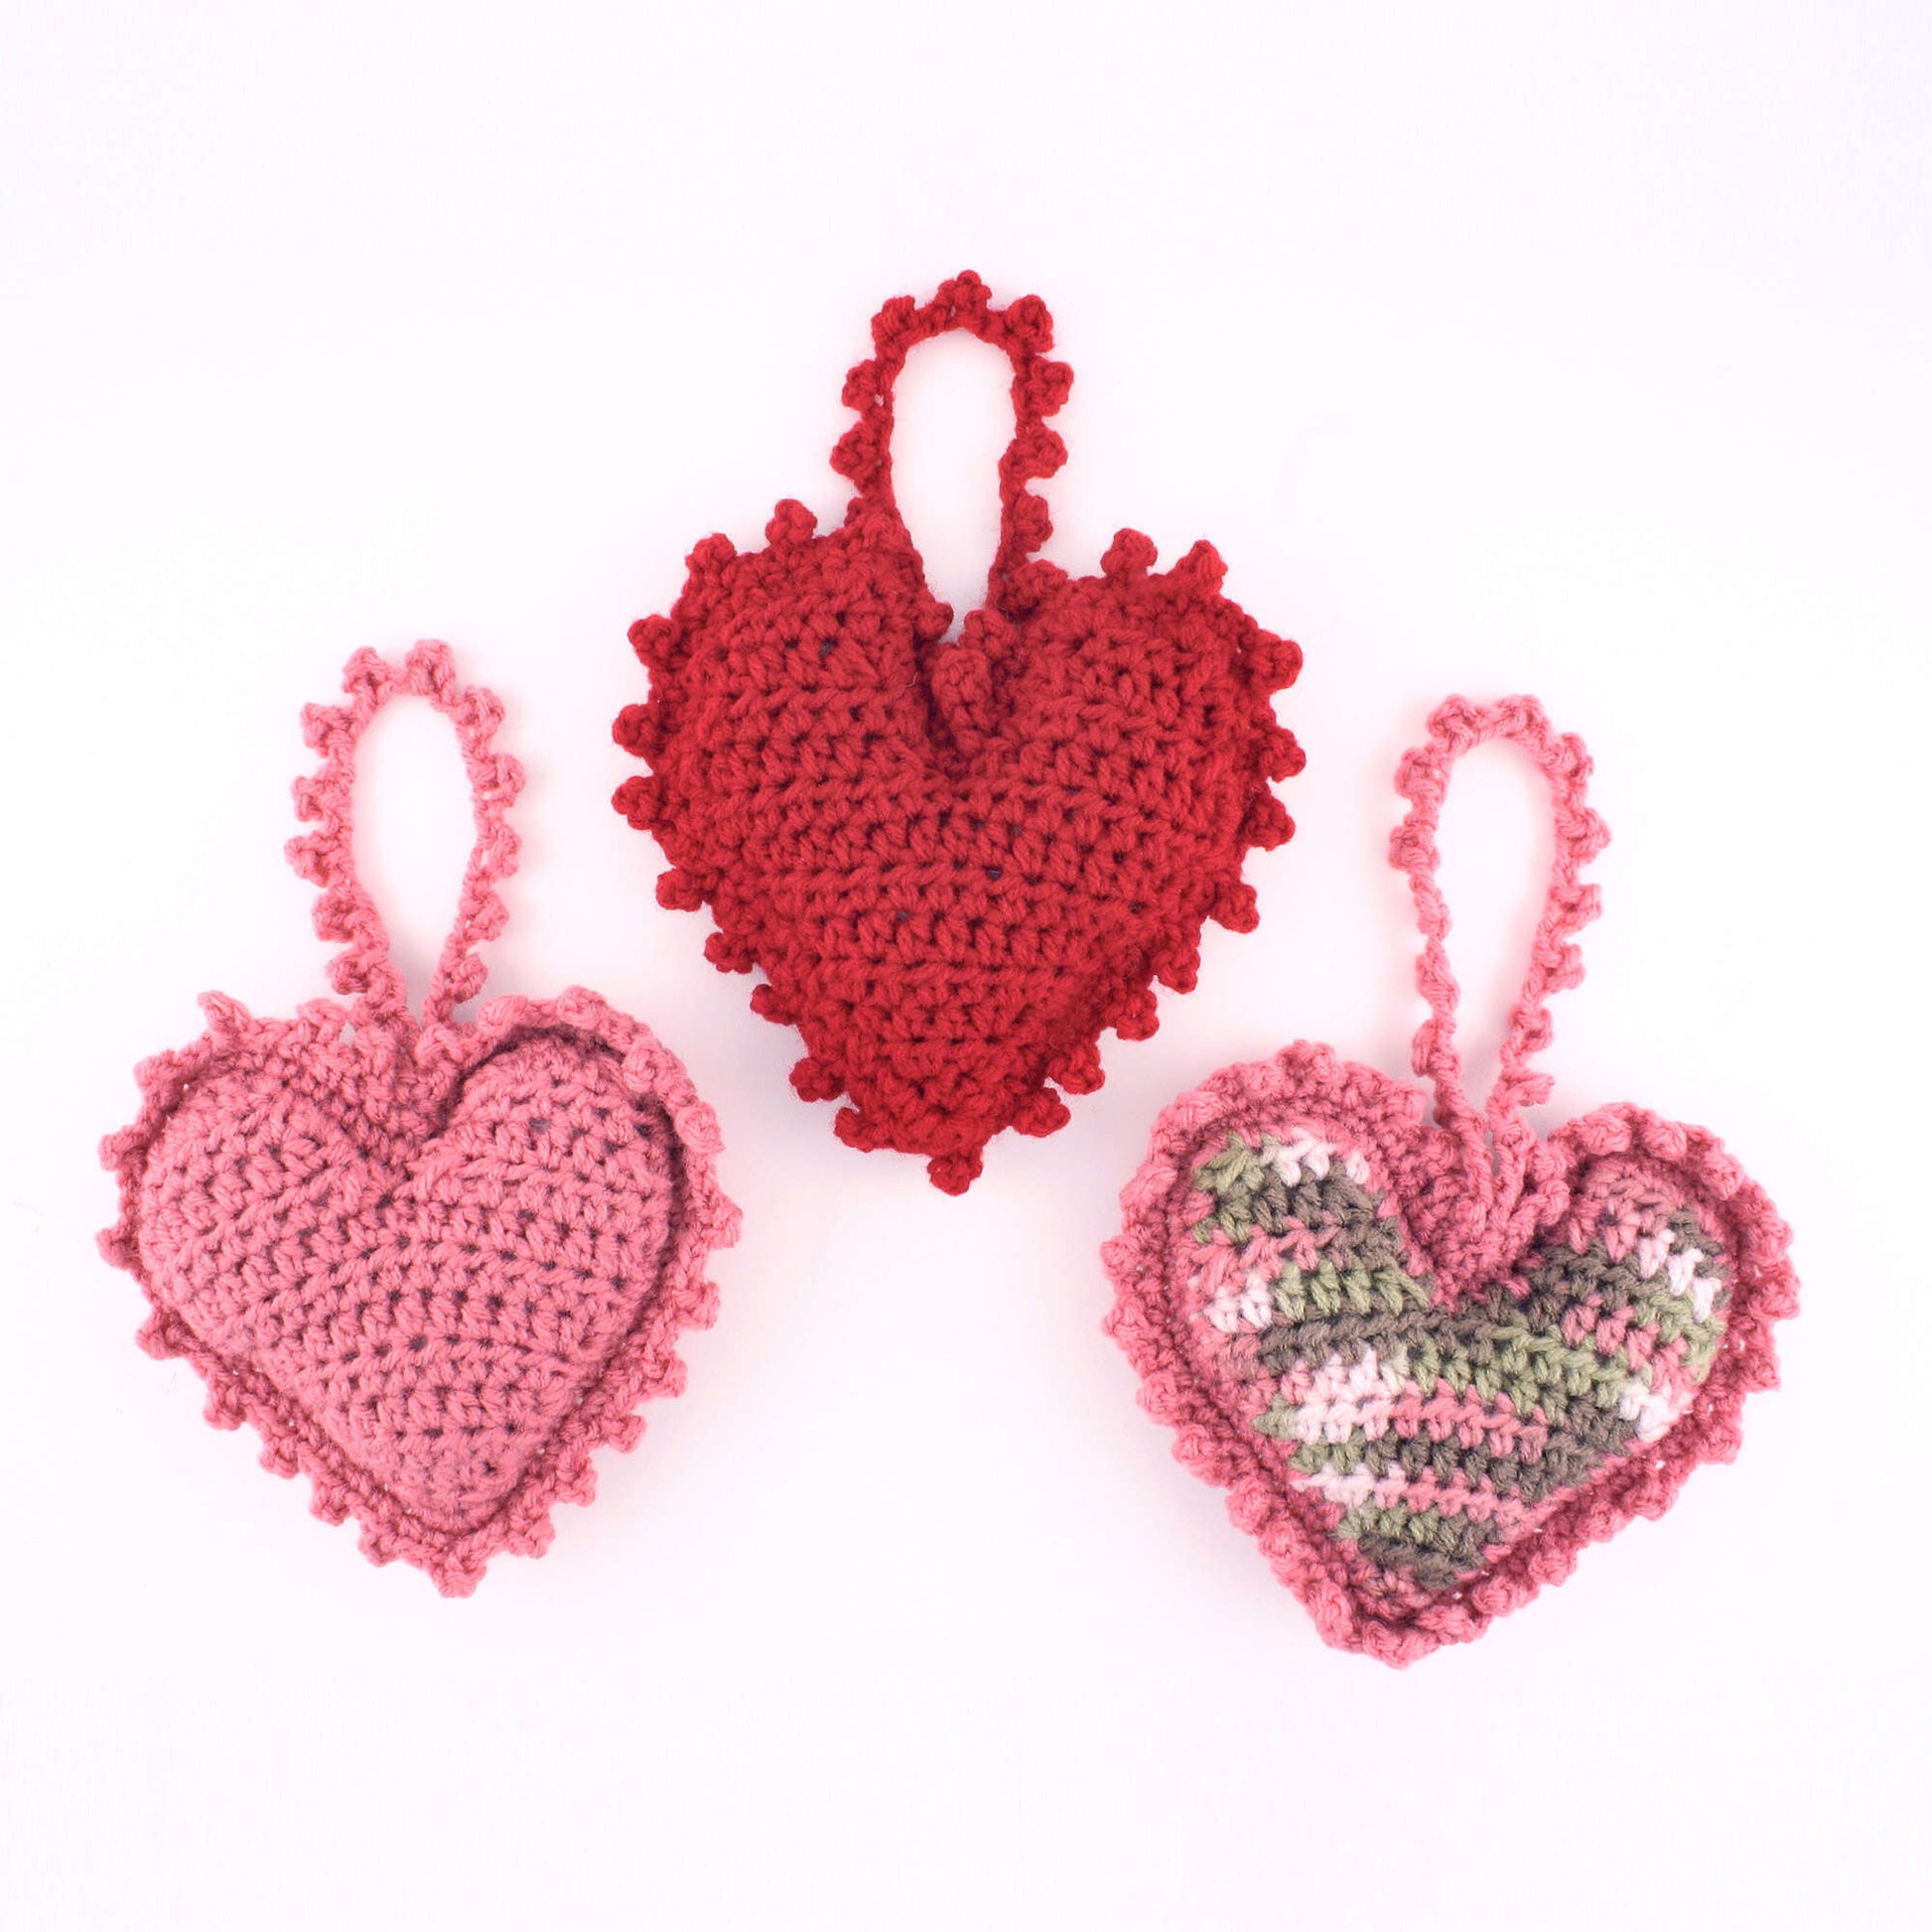 Free Red Heart Sweet Heart Sachet Crochet Pattern